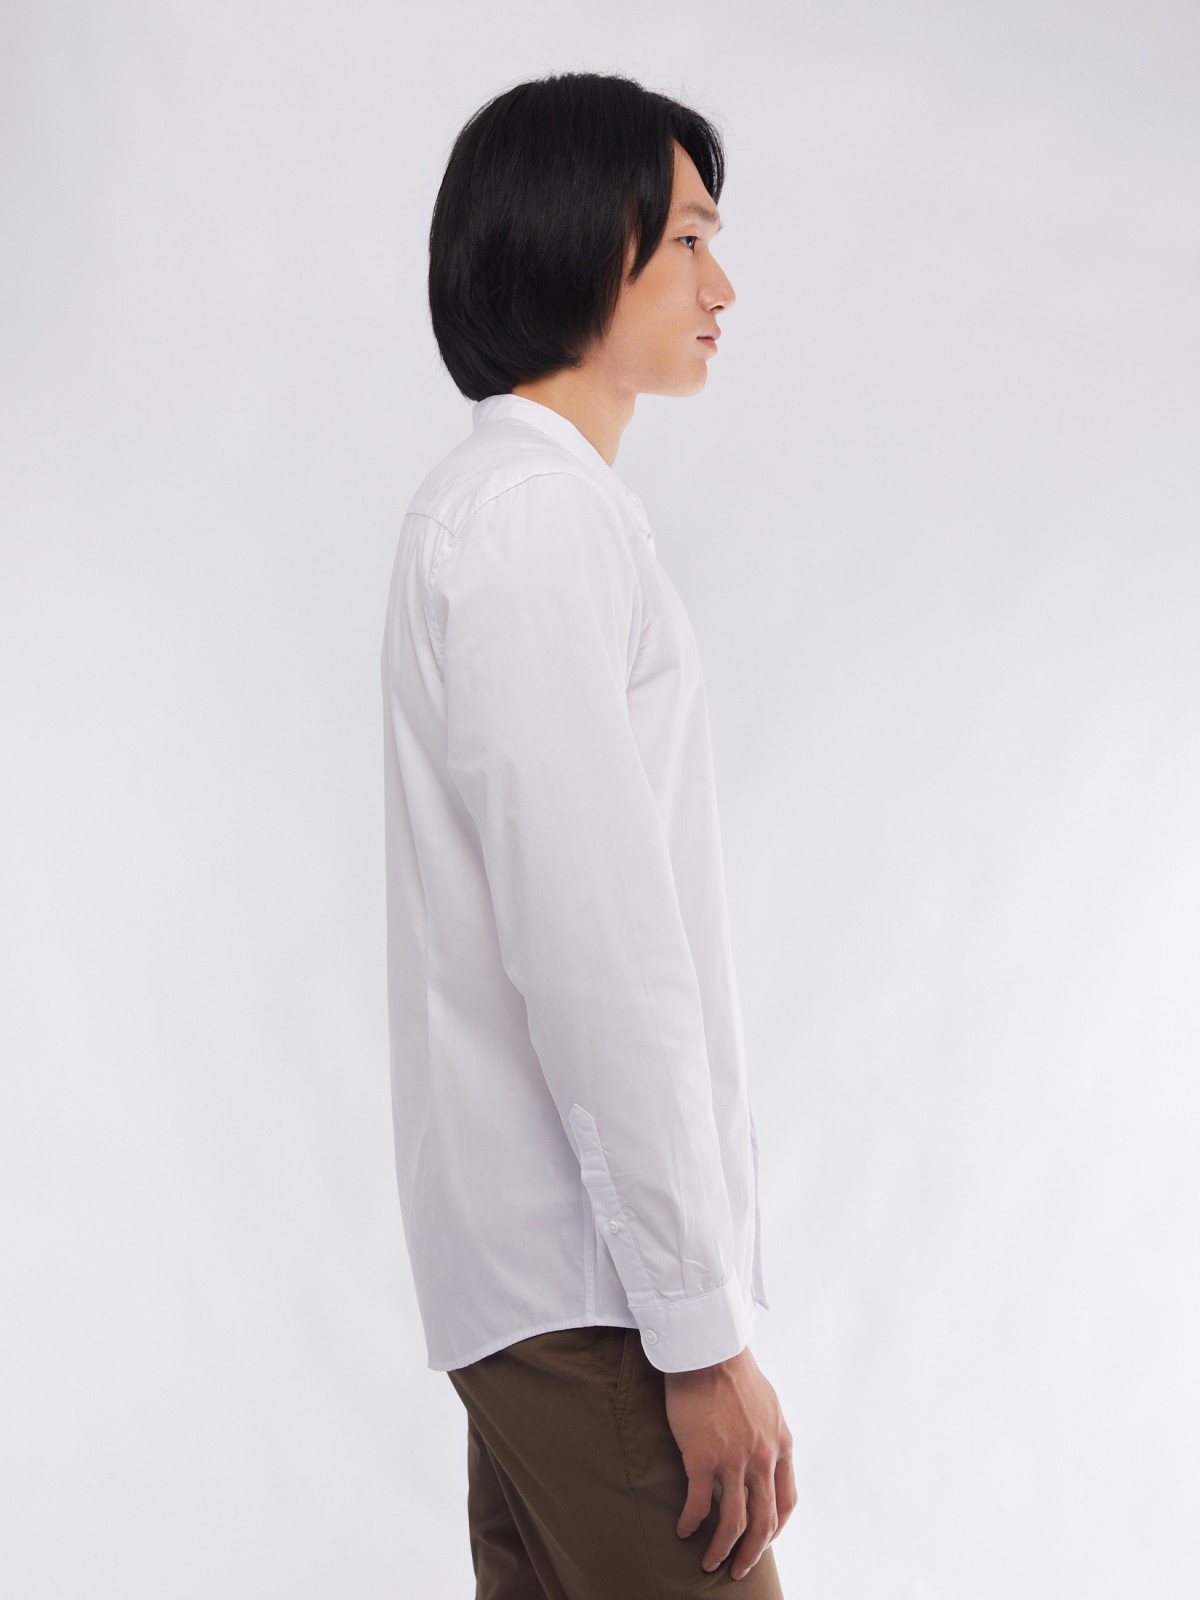 Офисная рубашка с воротником-стойкой и длинным рукавом zolla 01411217W072, цвет белый, размер M - фото 5